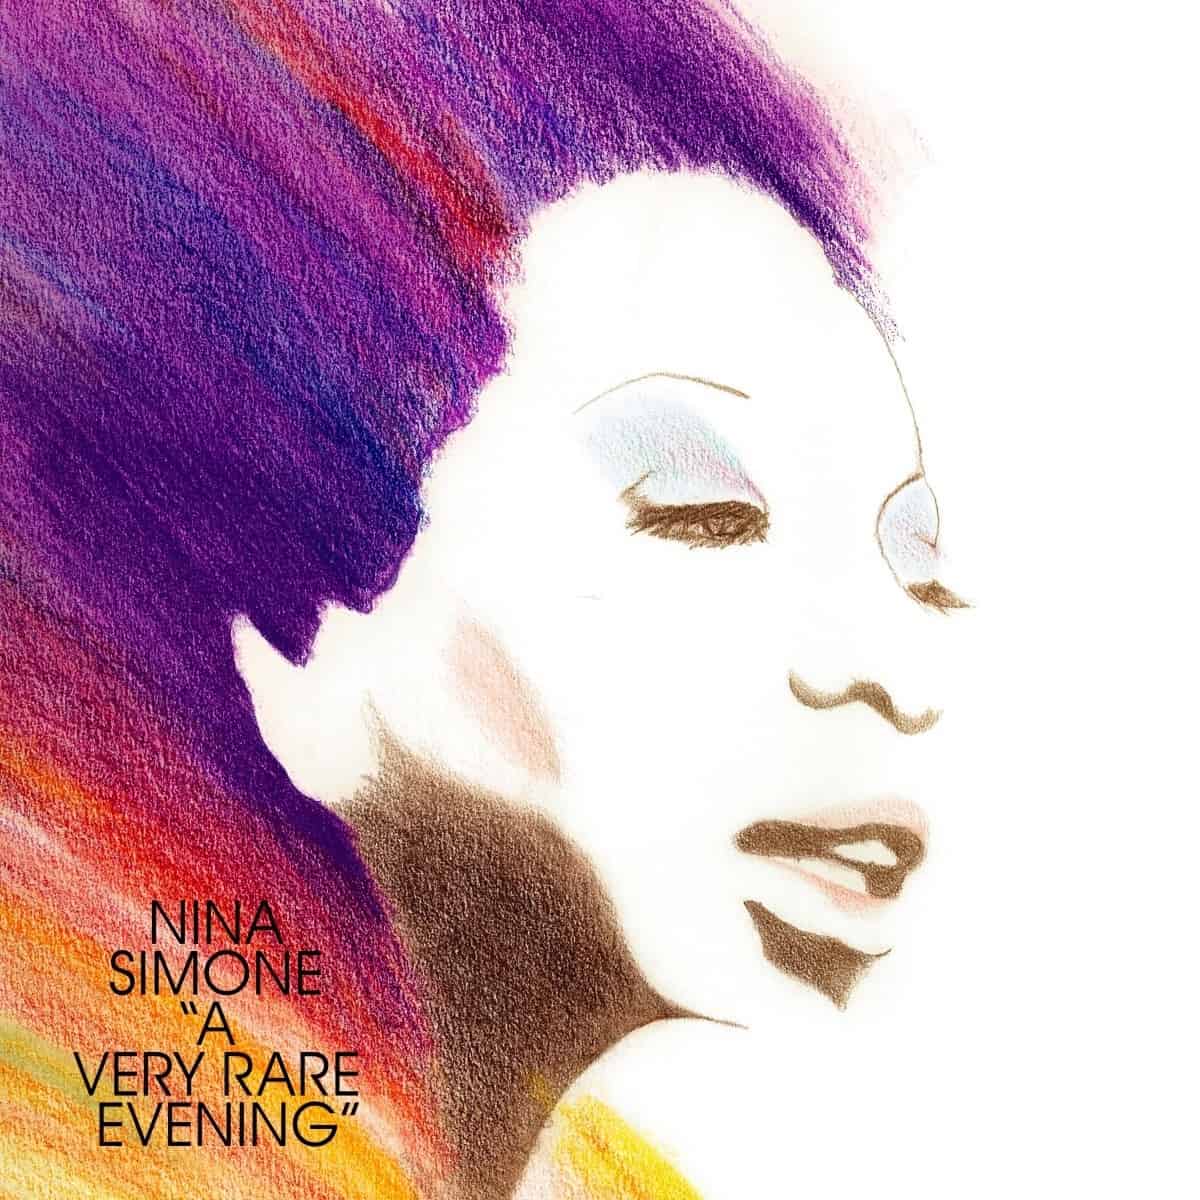 NINA SIMONE - A Very Rare Evening - LP - Vinyl